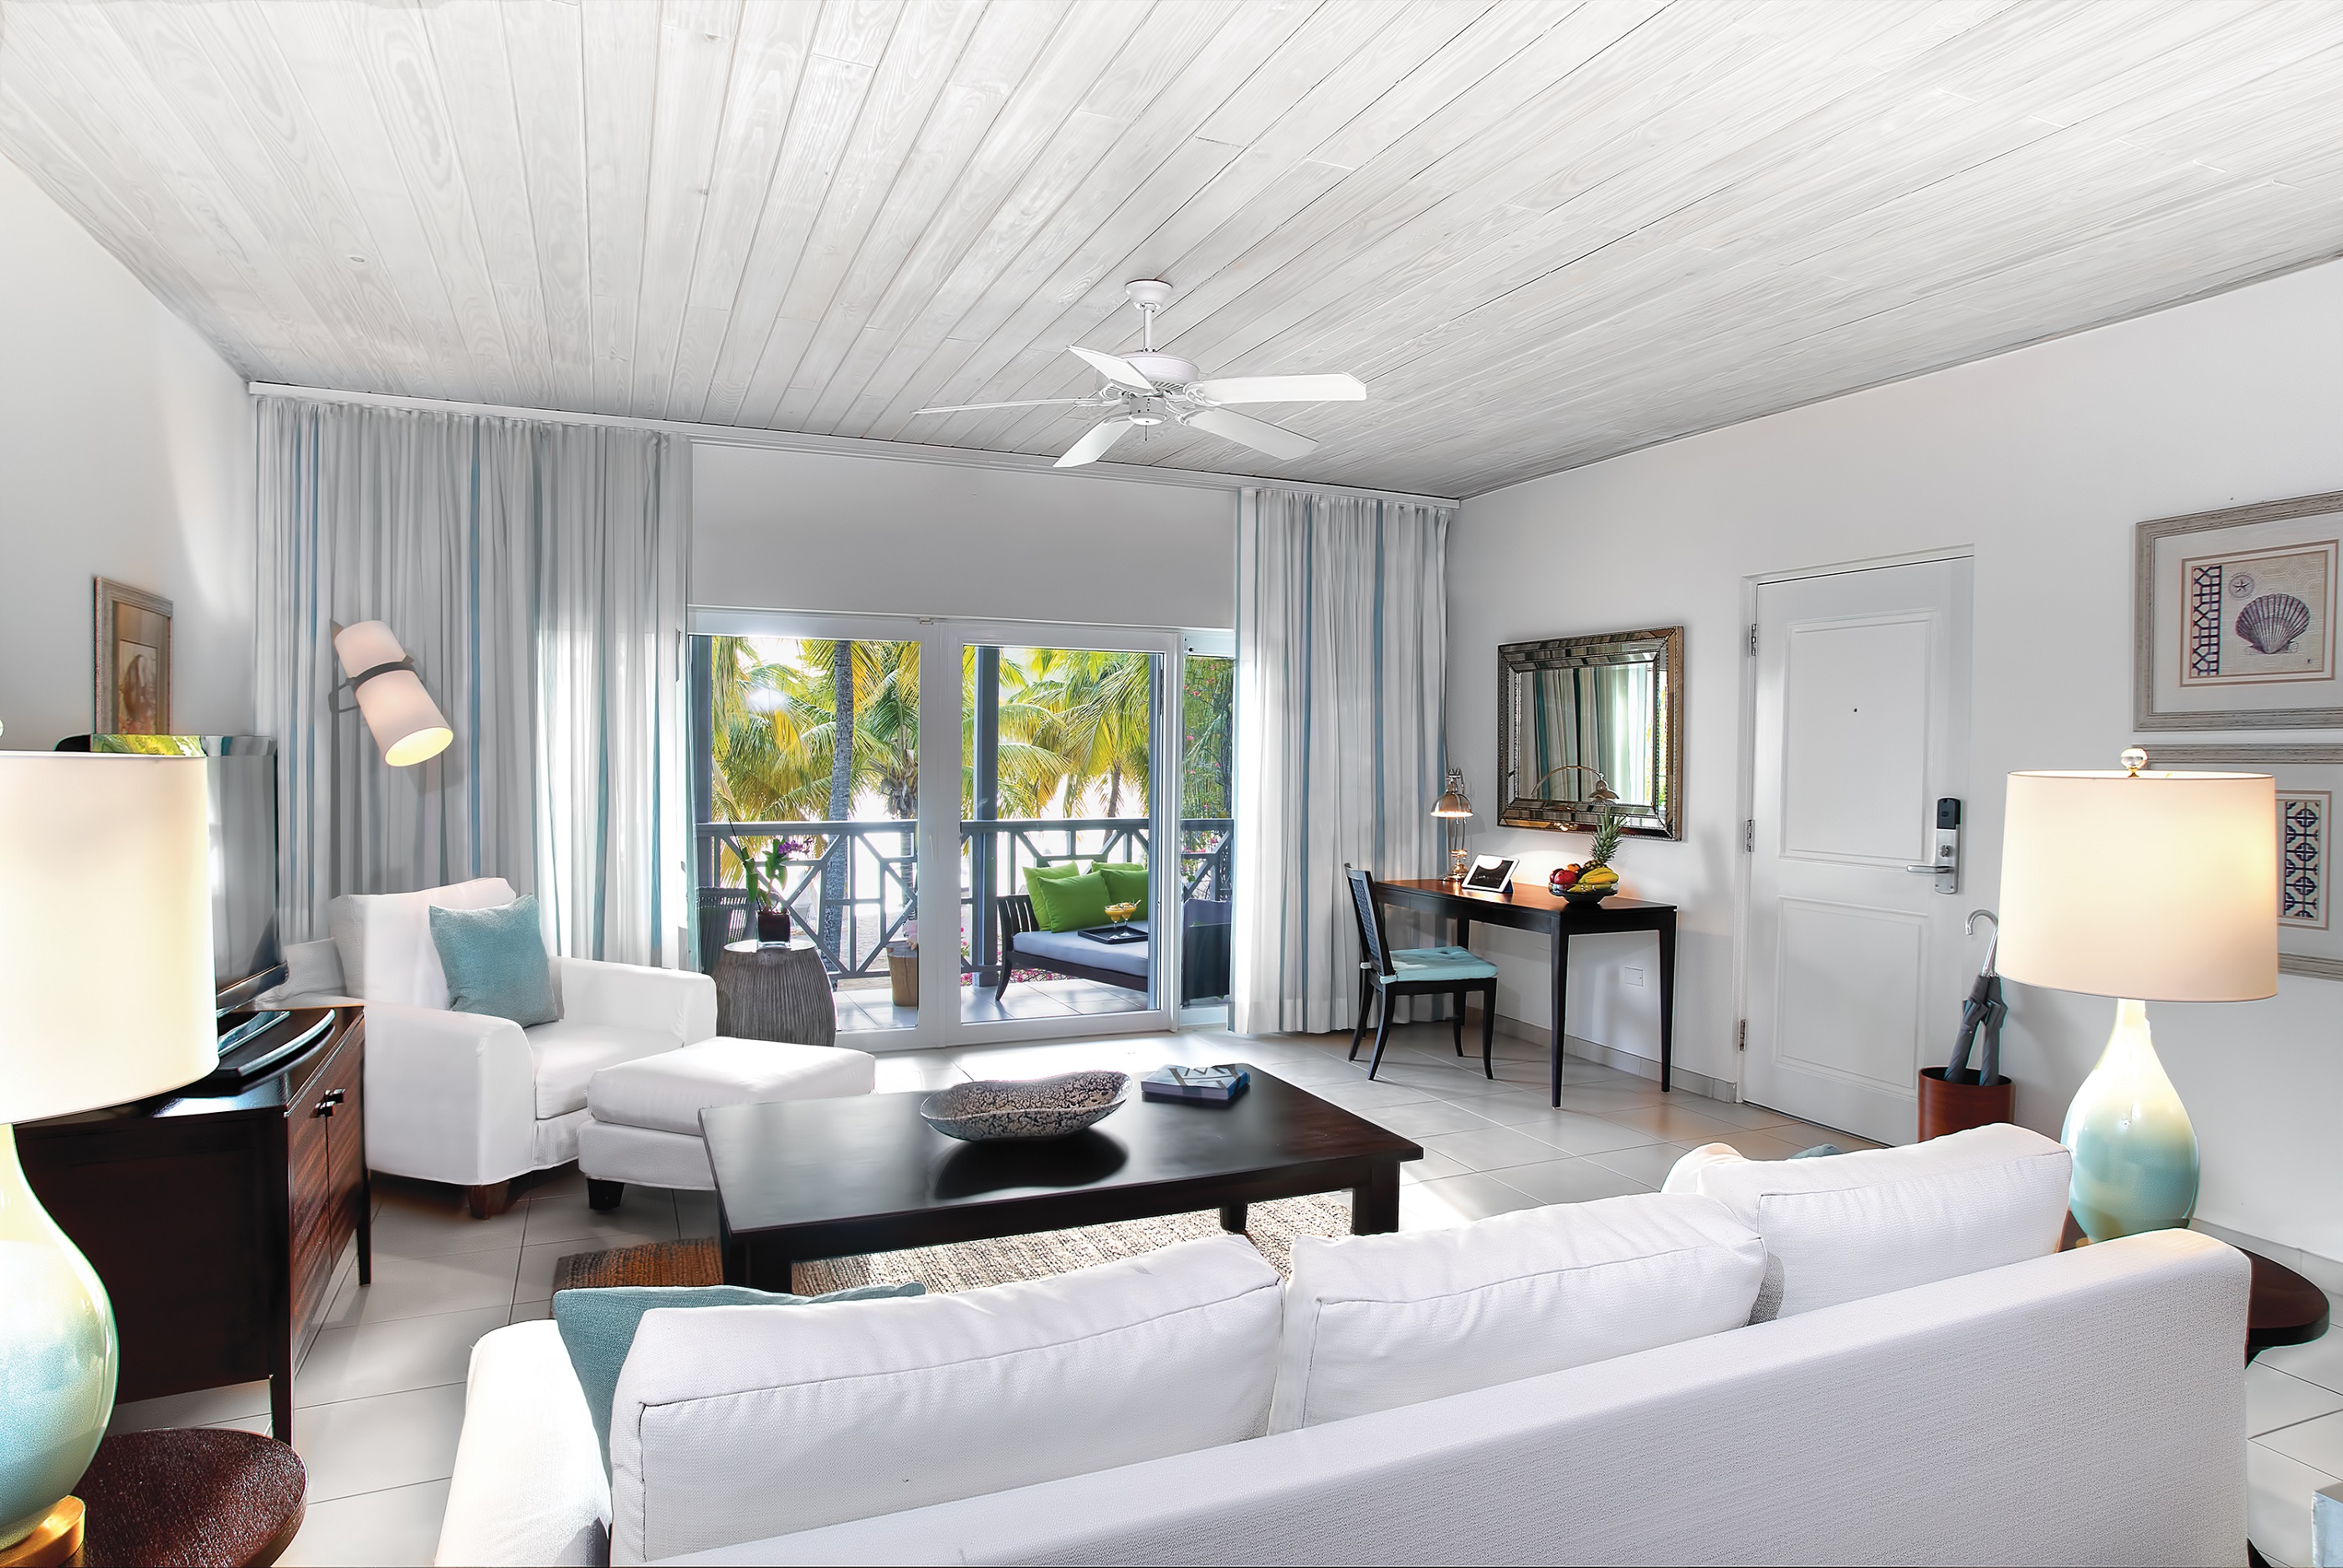 Living room of an ocean suite at Carlisle Bay, Antigua